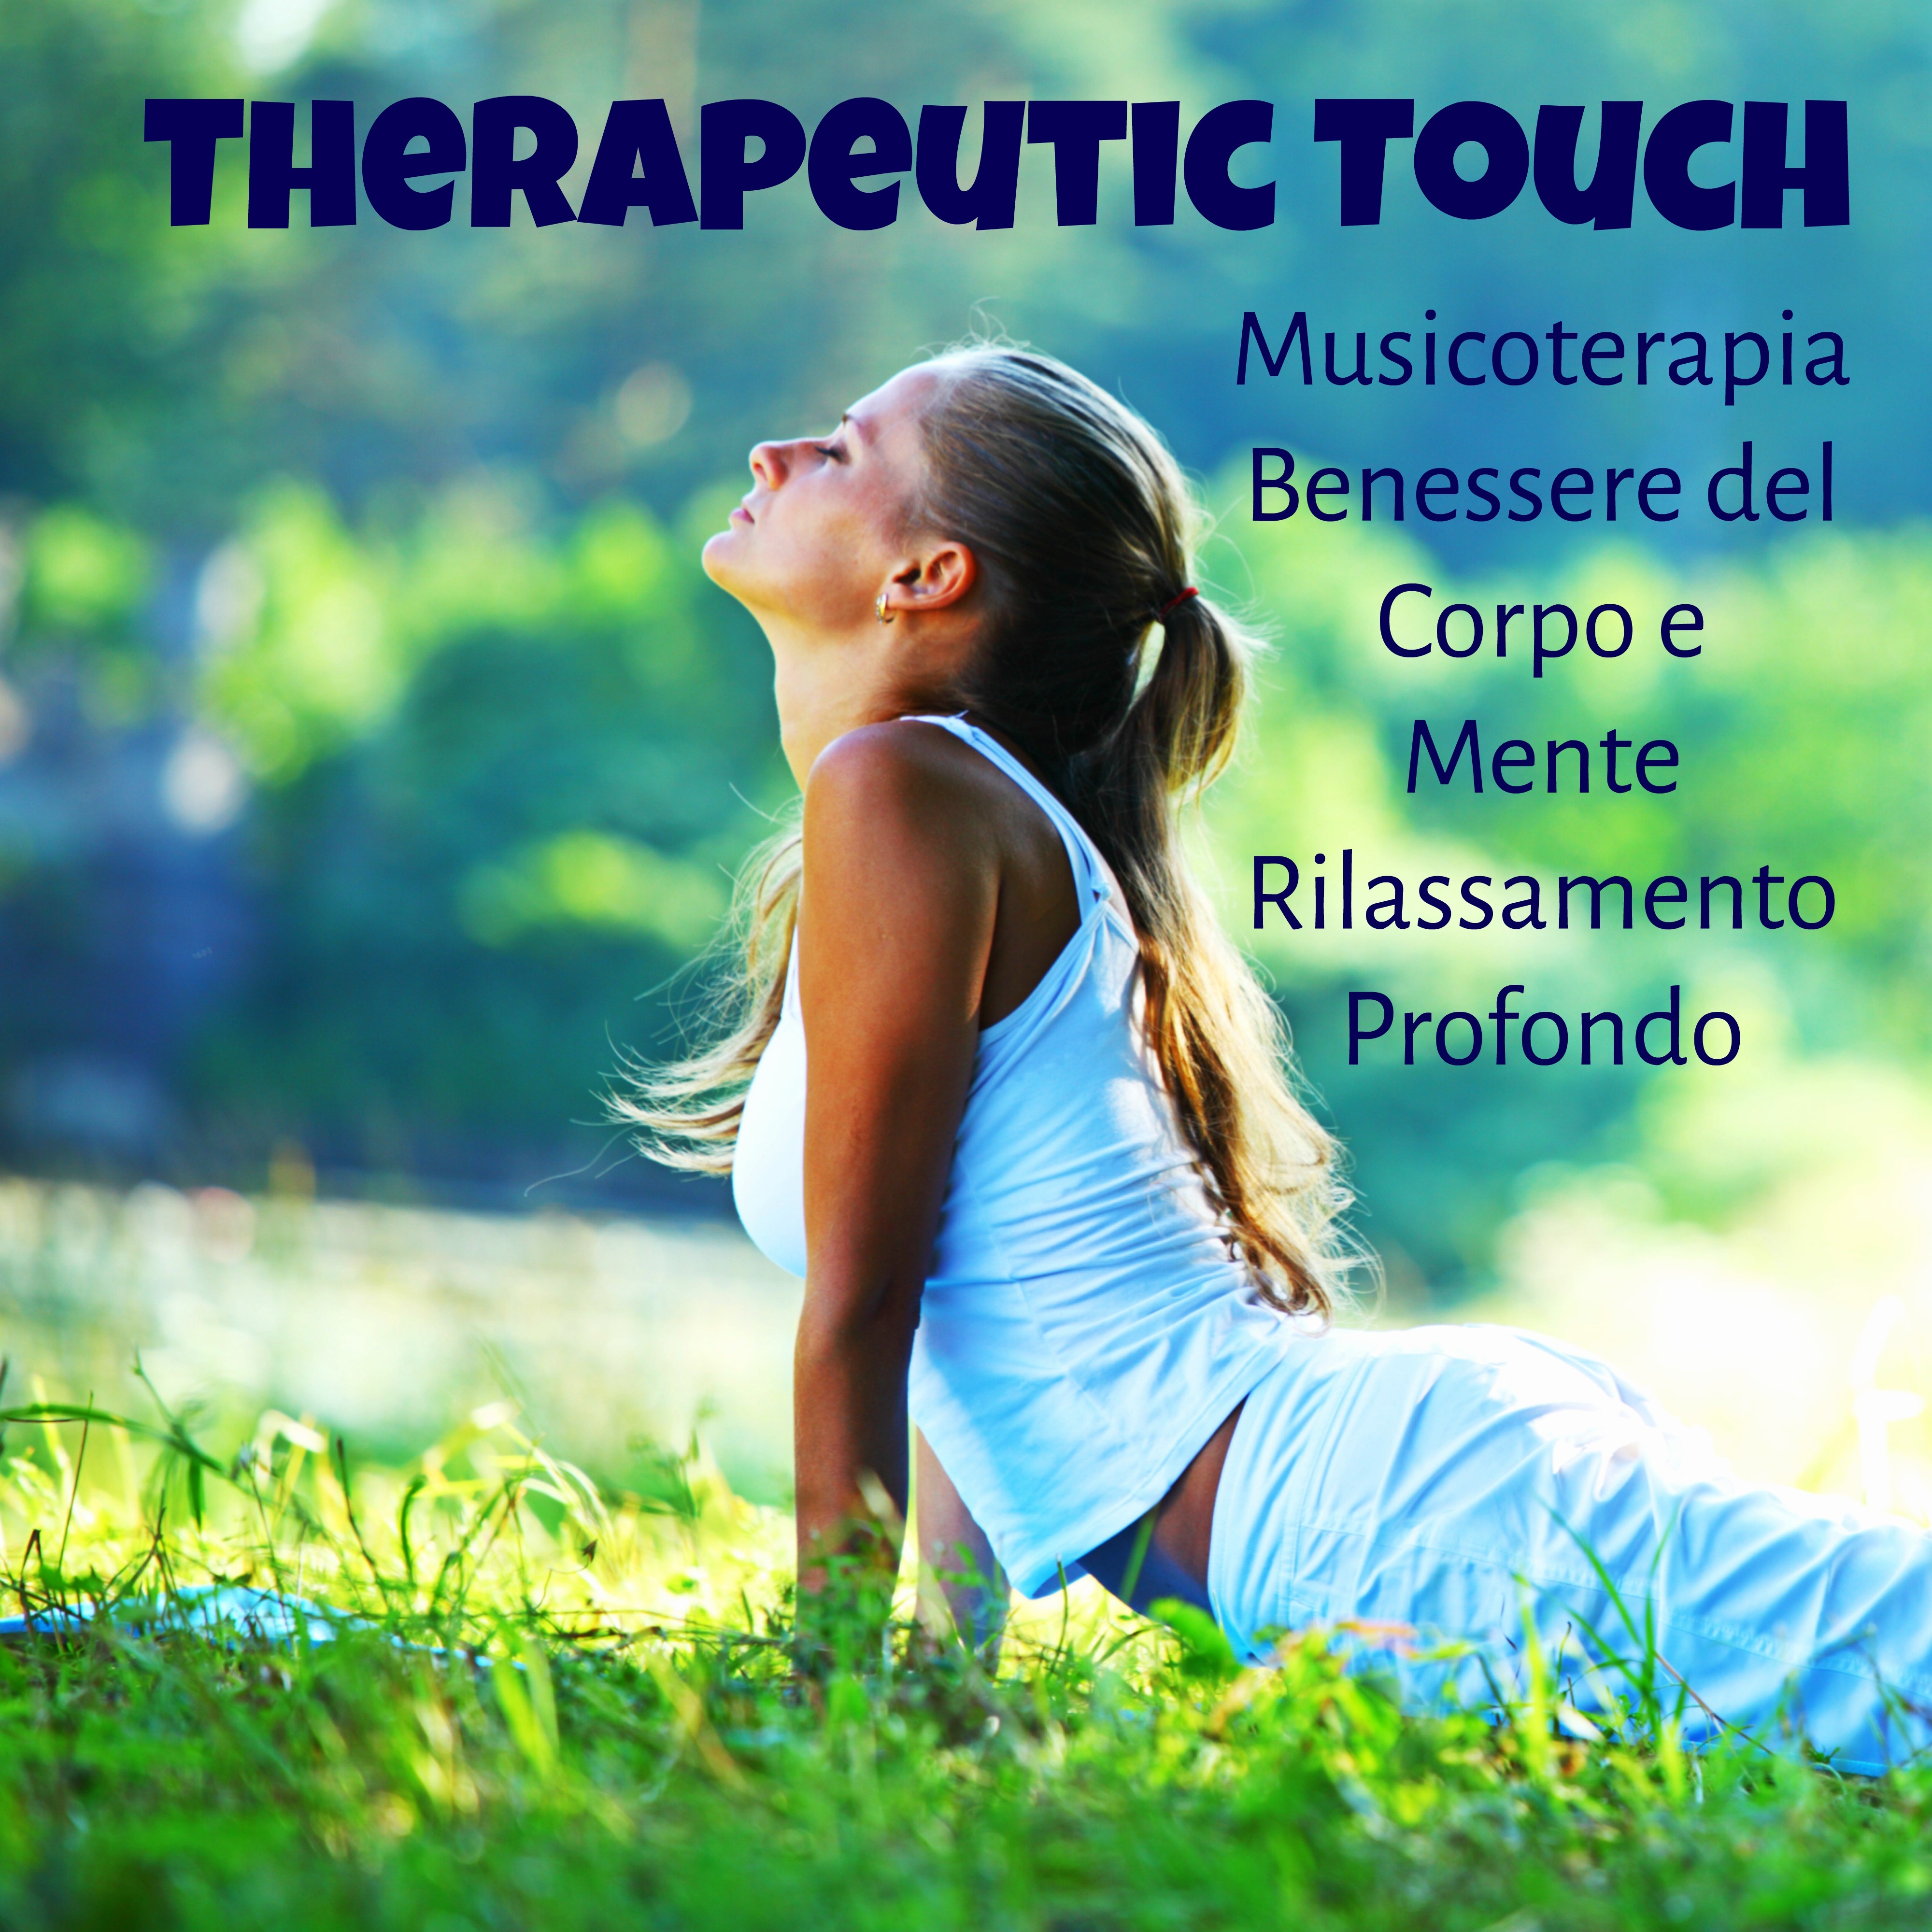 Therapeutic Touch - Musicoterapia Benessere del Corpo e Mente Rilassamento Profondo con Suoni dalla Natura Strumentali New Age